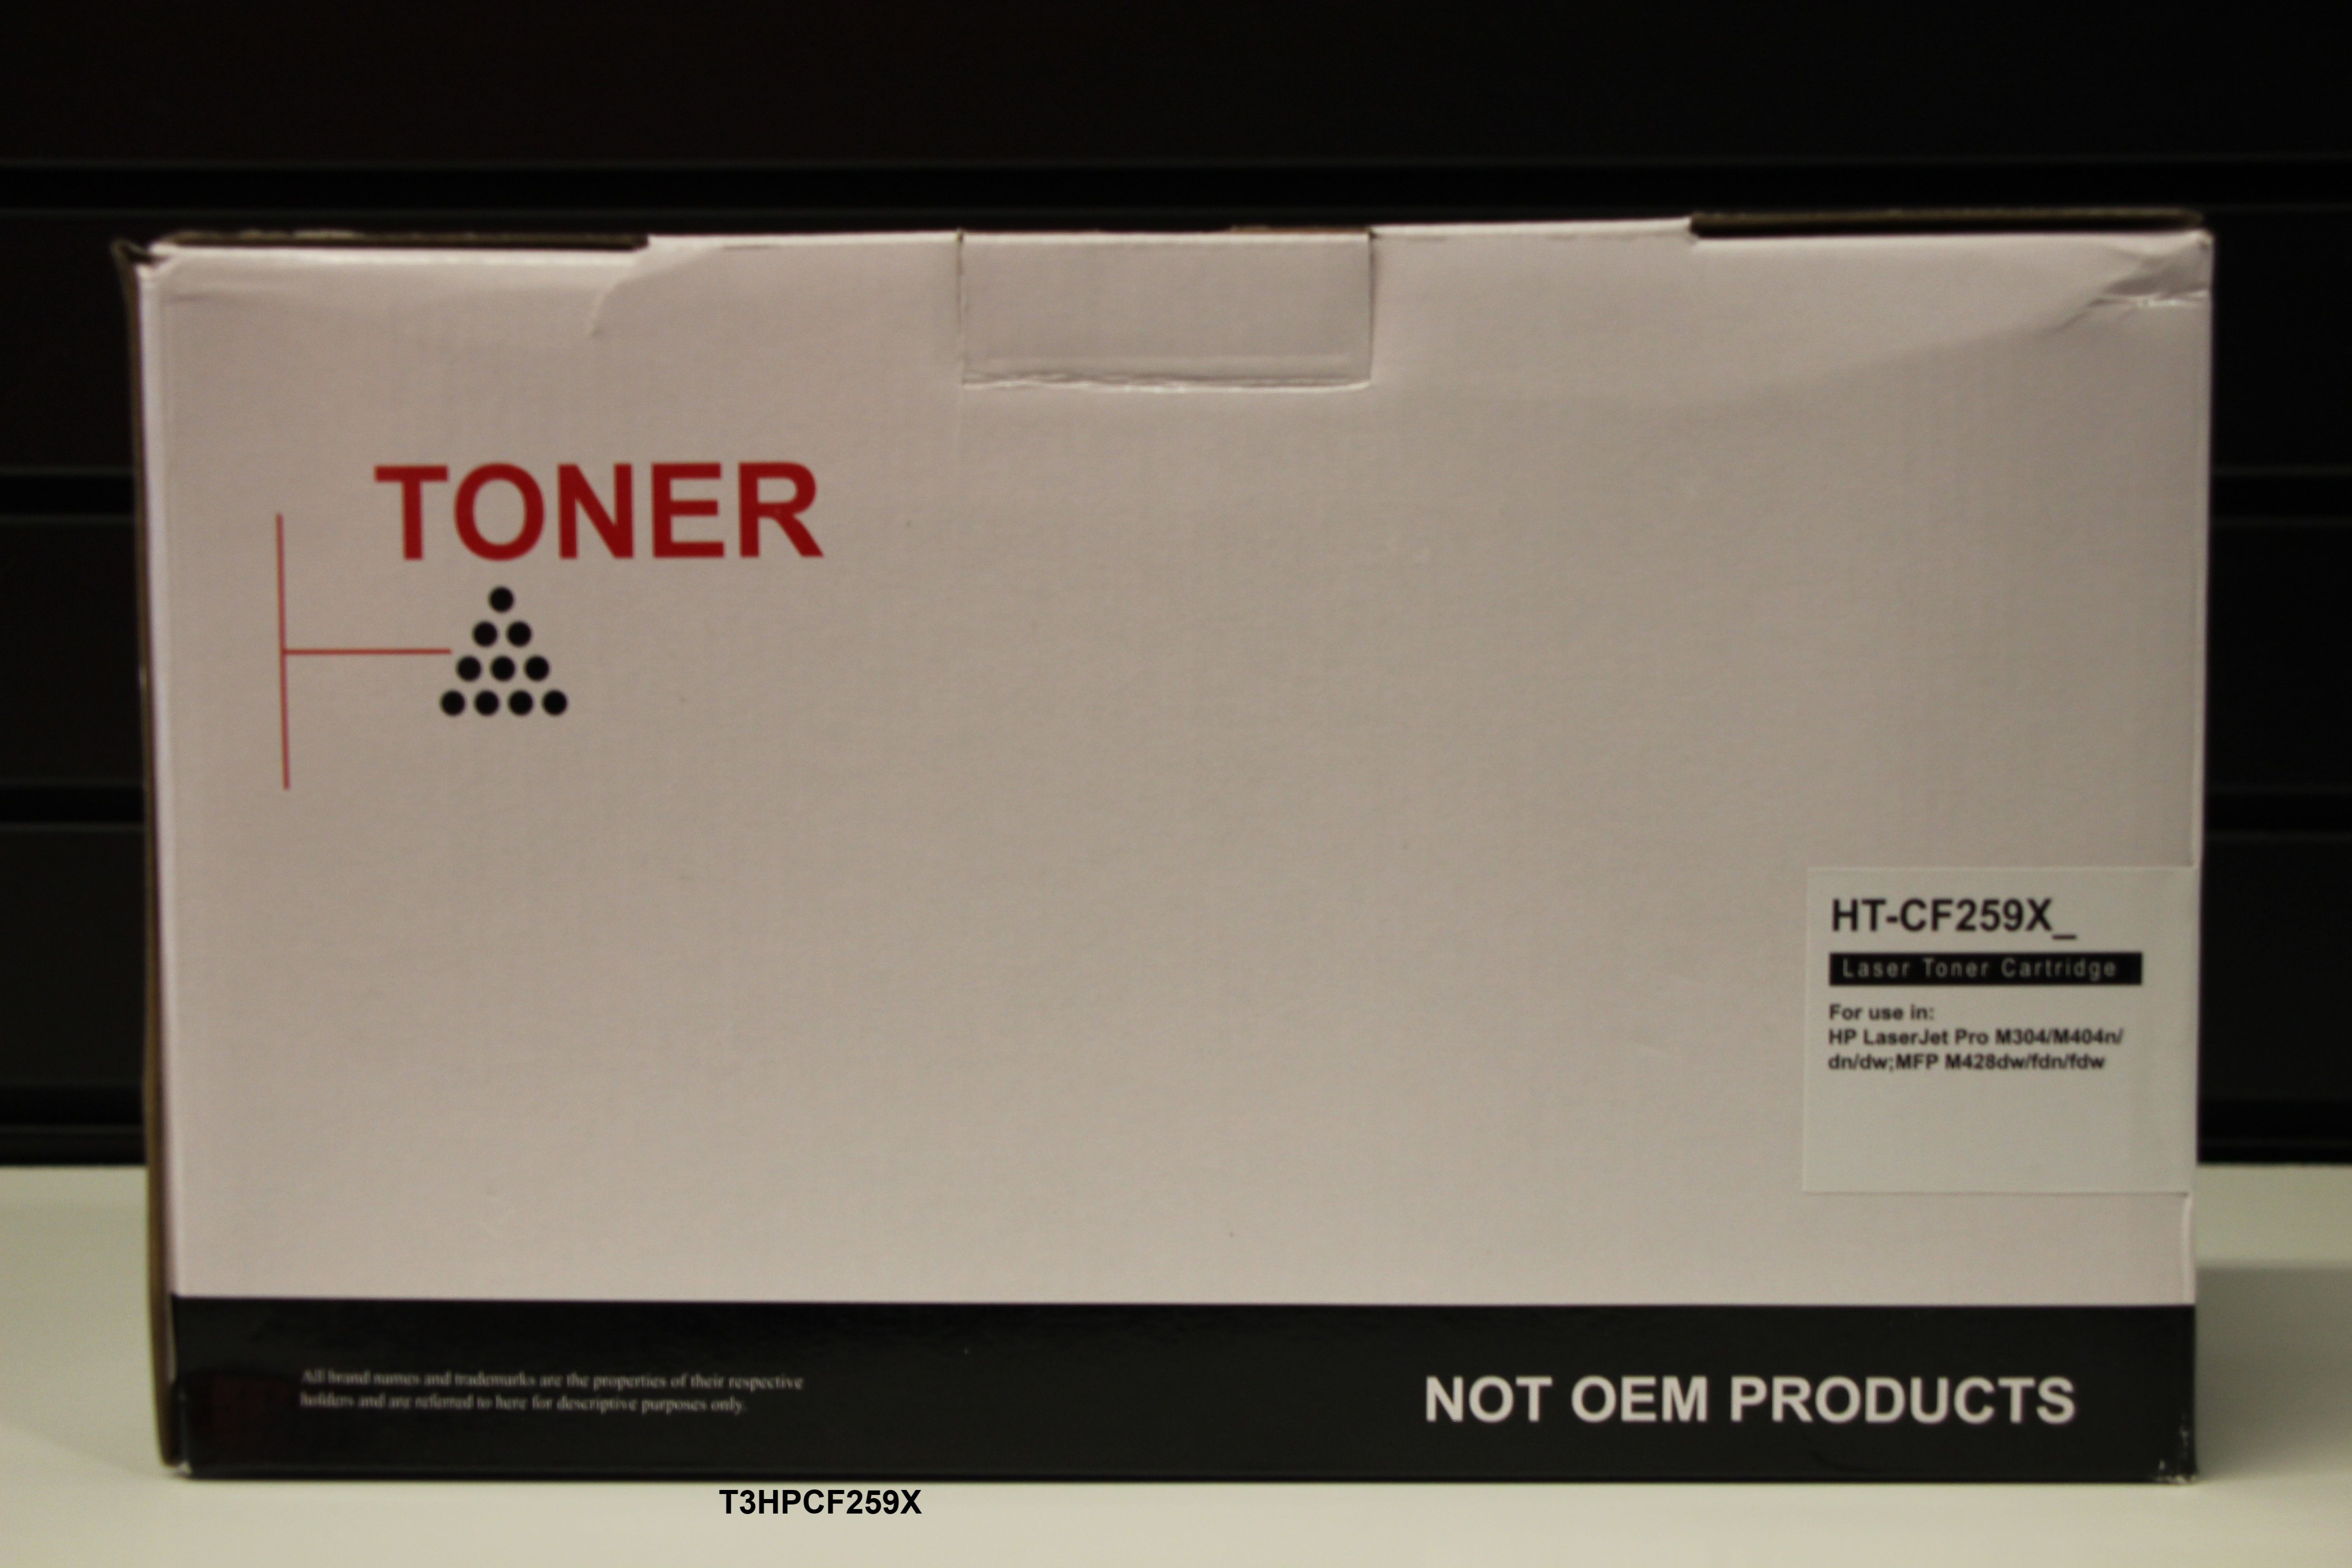 Toner noir compatible HP laserjet pro MFP m428dw - 10000 pages